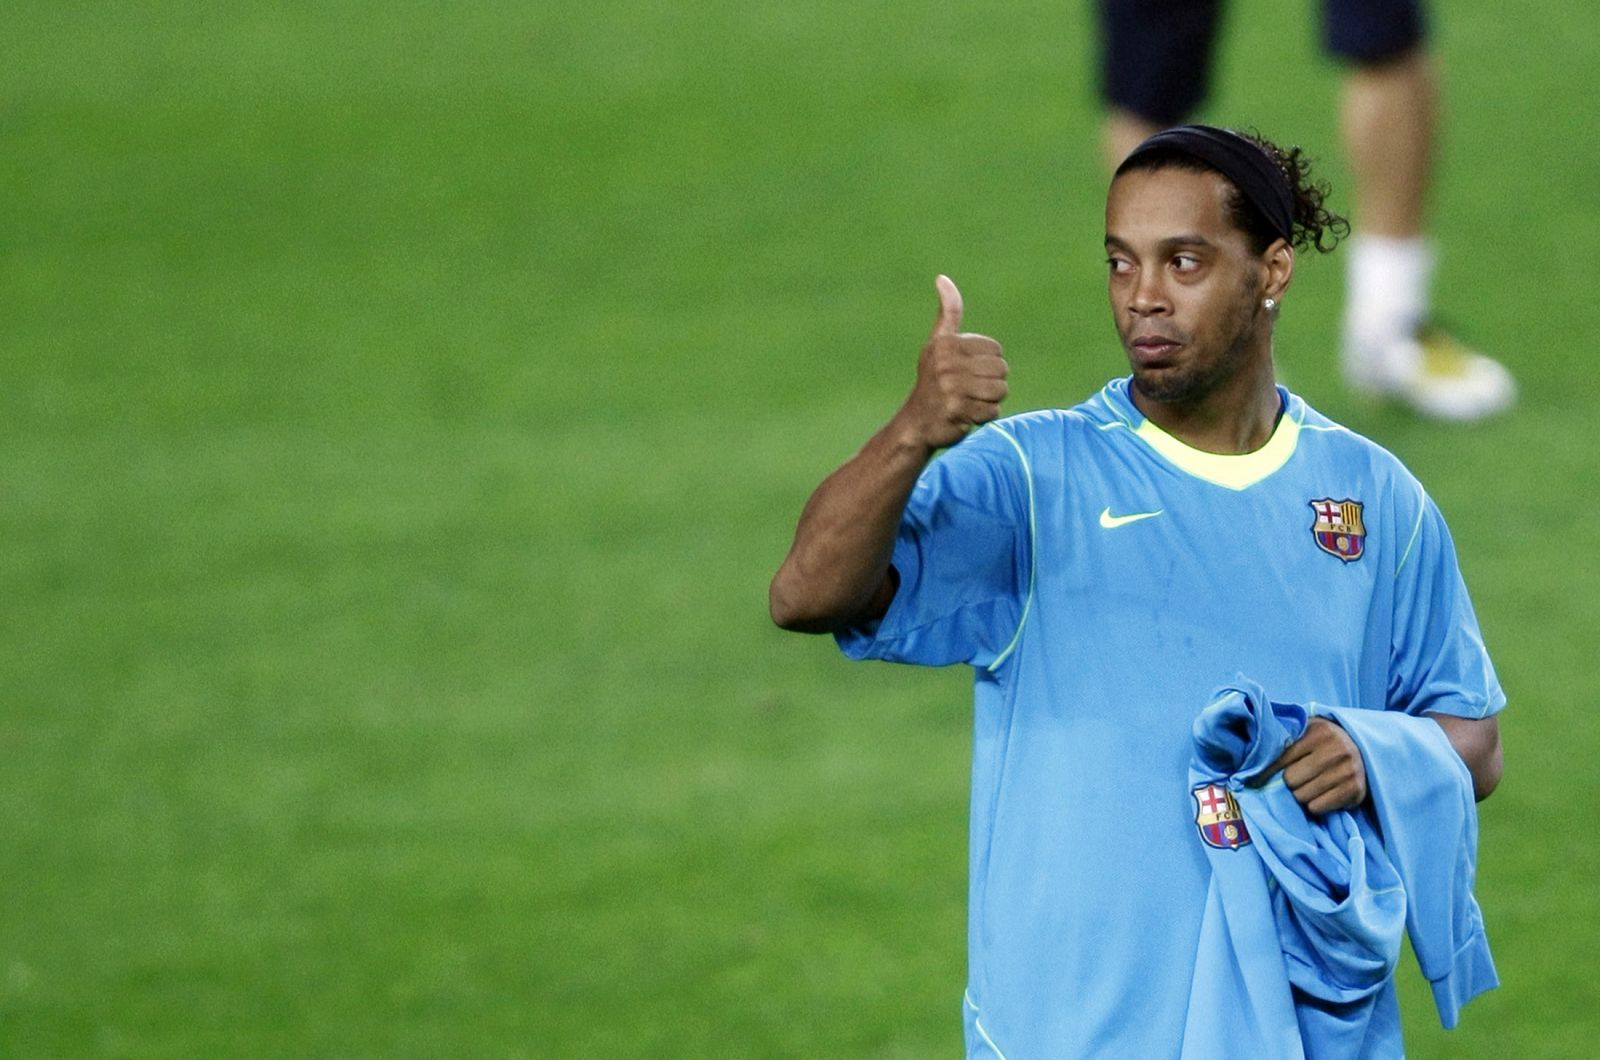 El Manchester City ofrece 32 millones de euros por el jugador brasileño